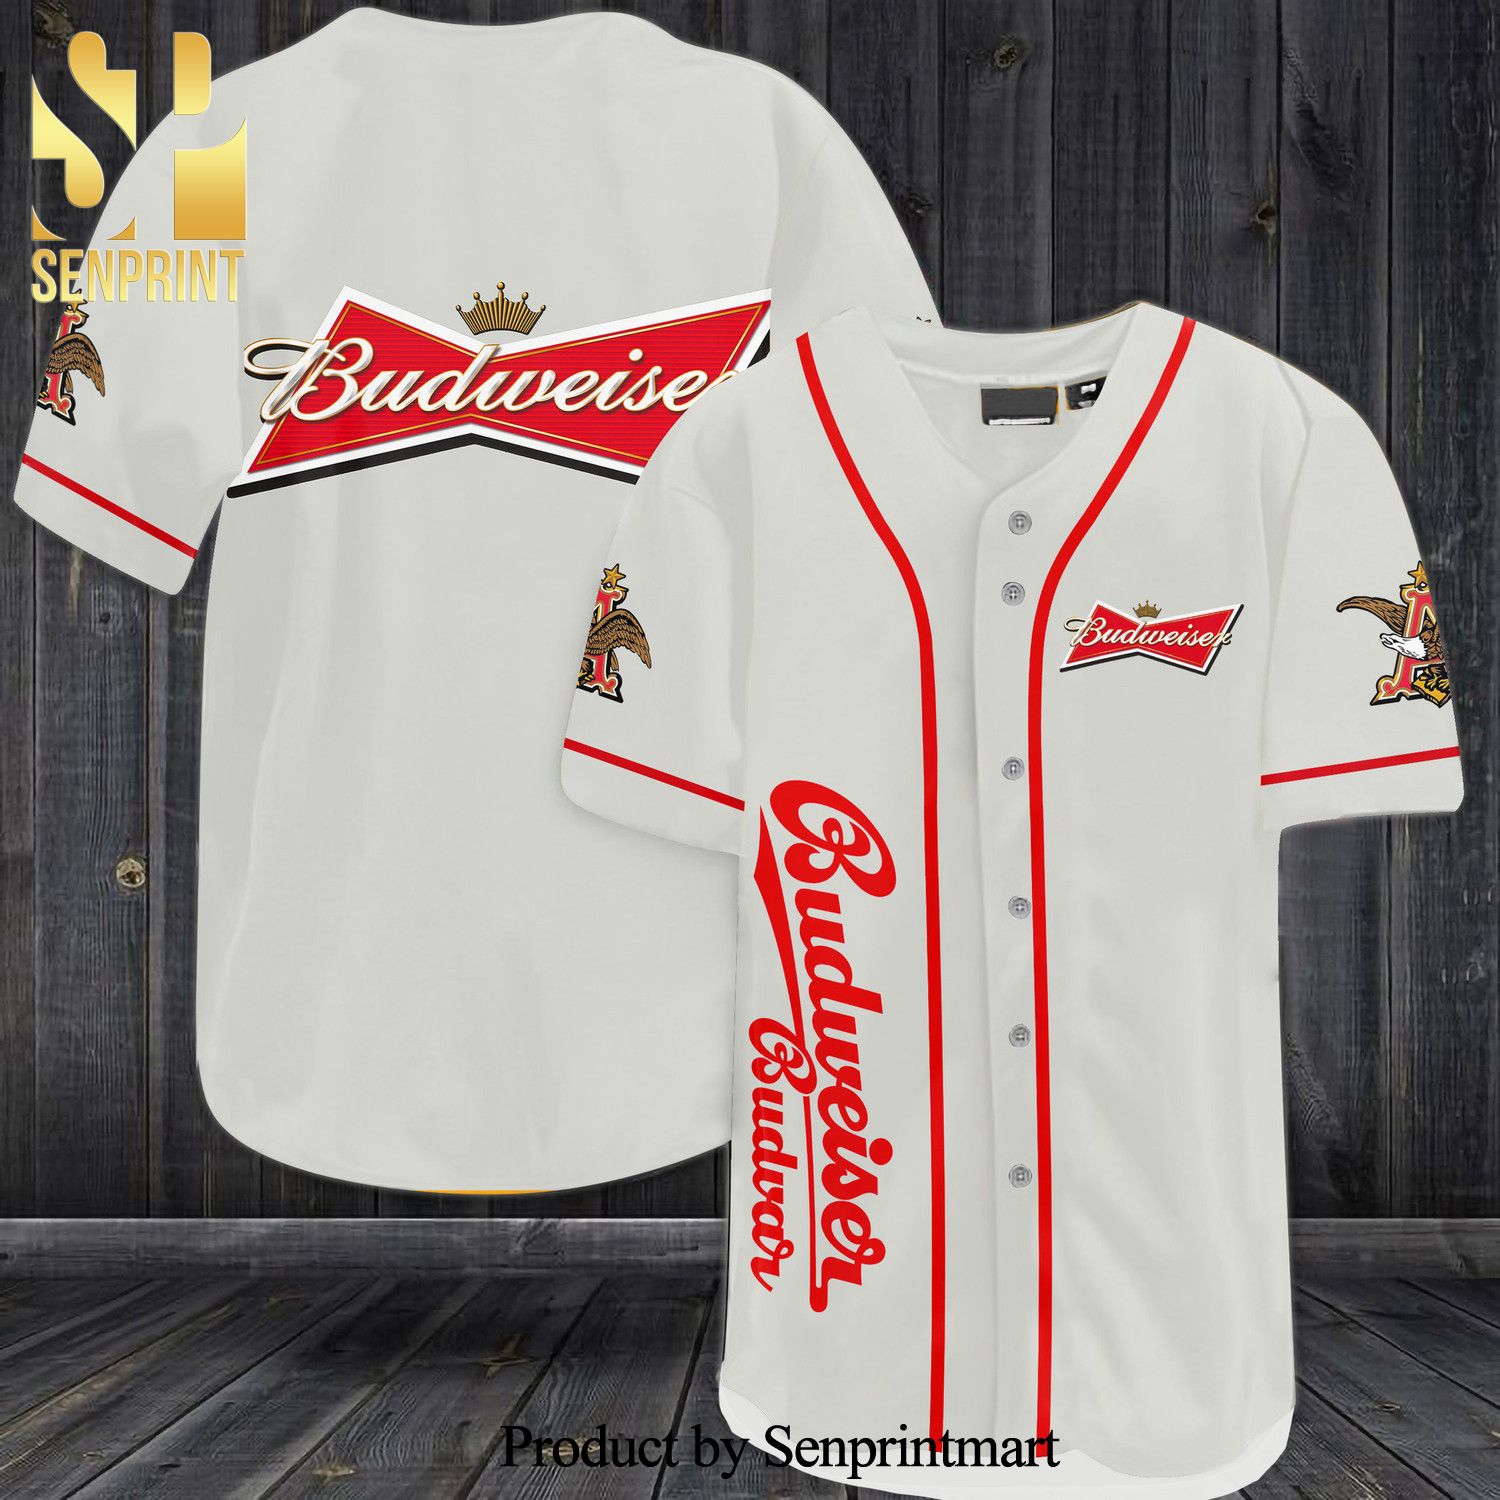 Budweiser Budvar All Over Print Baseball Jersey – White